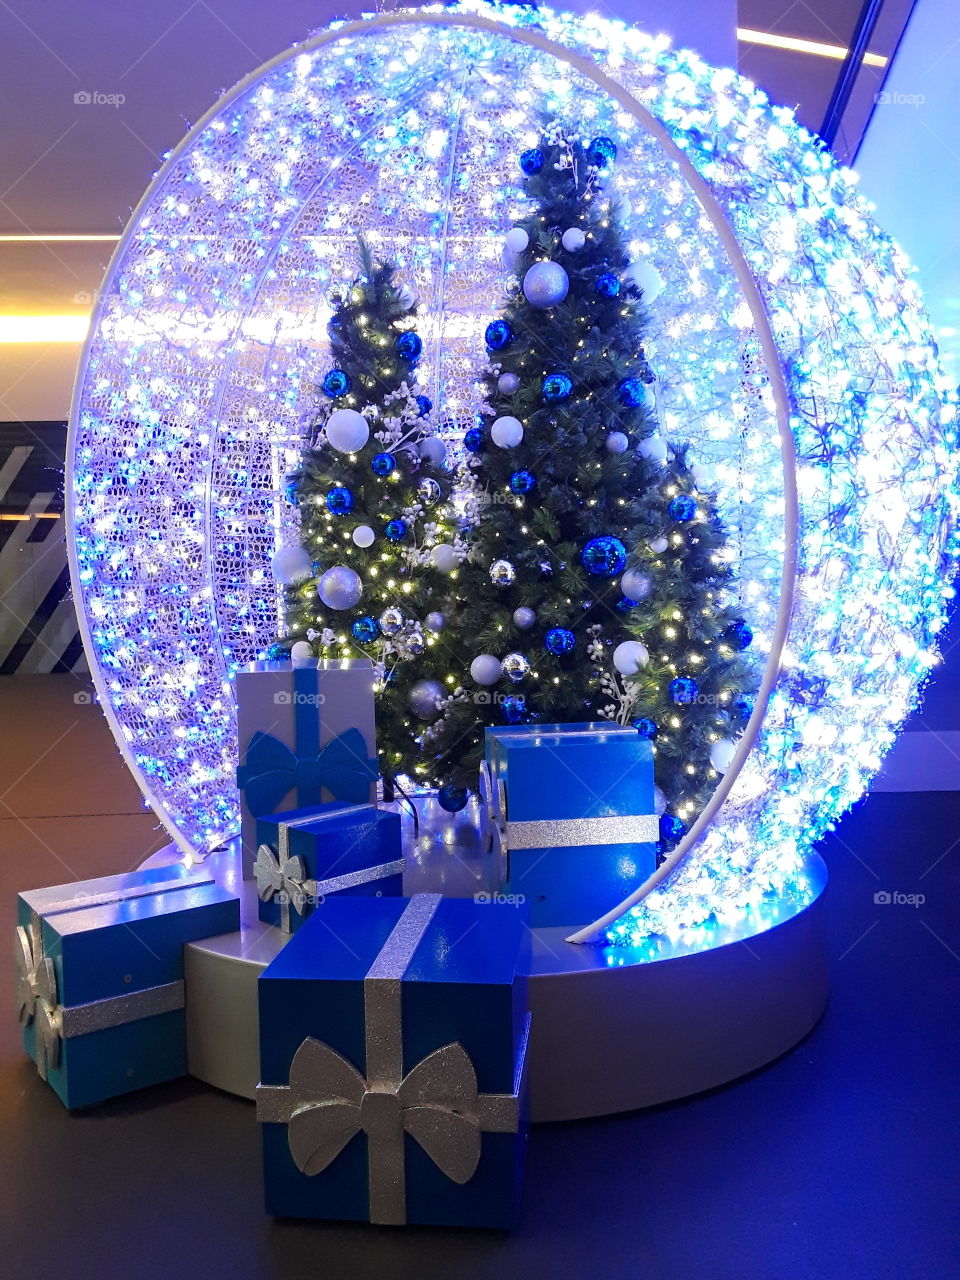 esfera navideña con luces de color azul,  árbol navideño con esferas y regalos navideños, festividad navidad